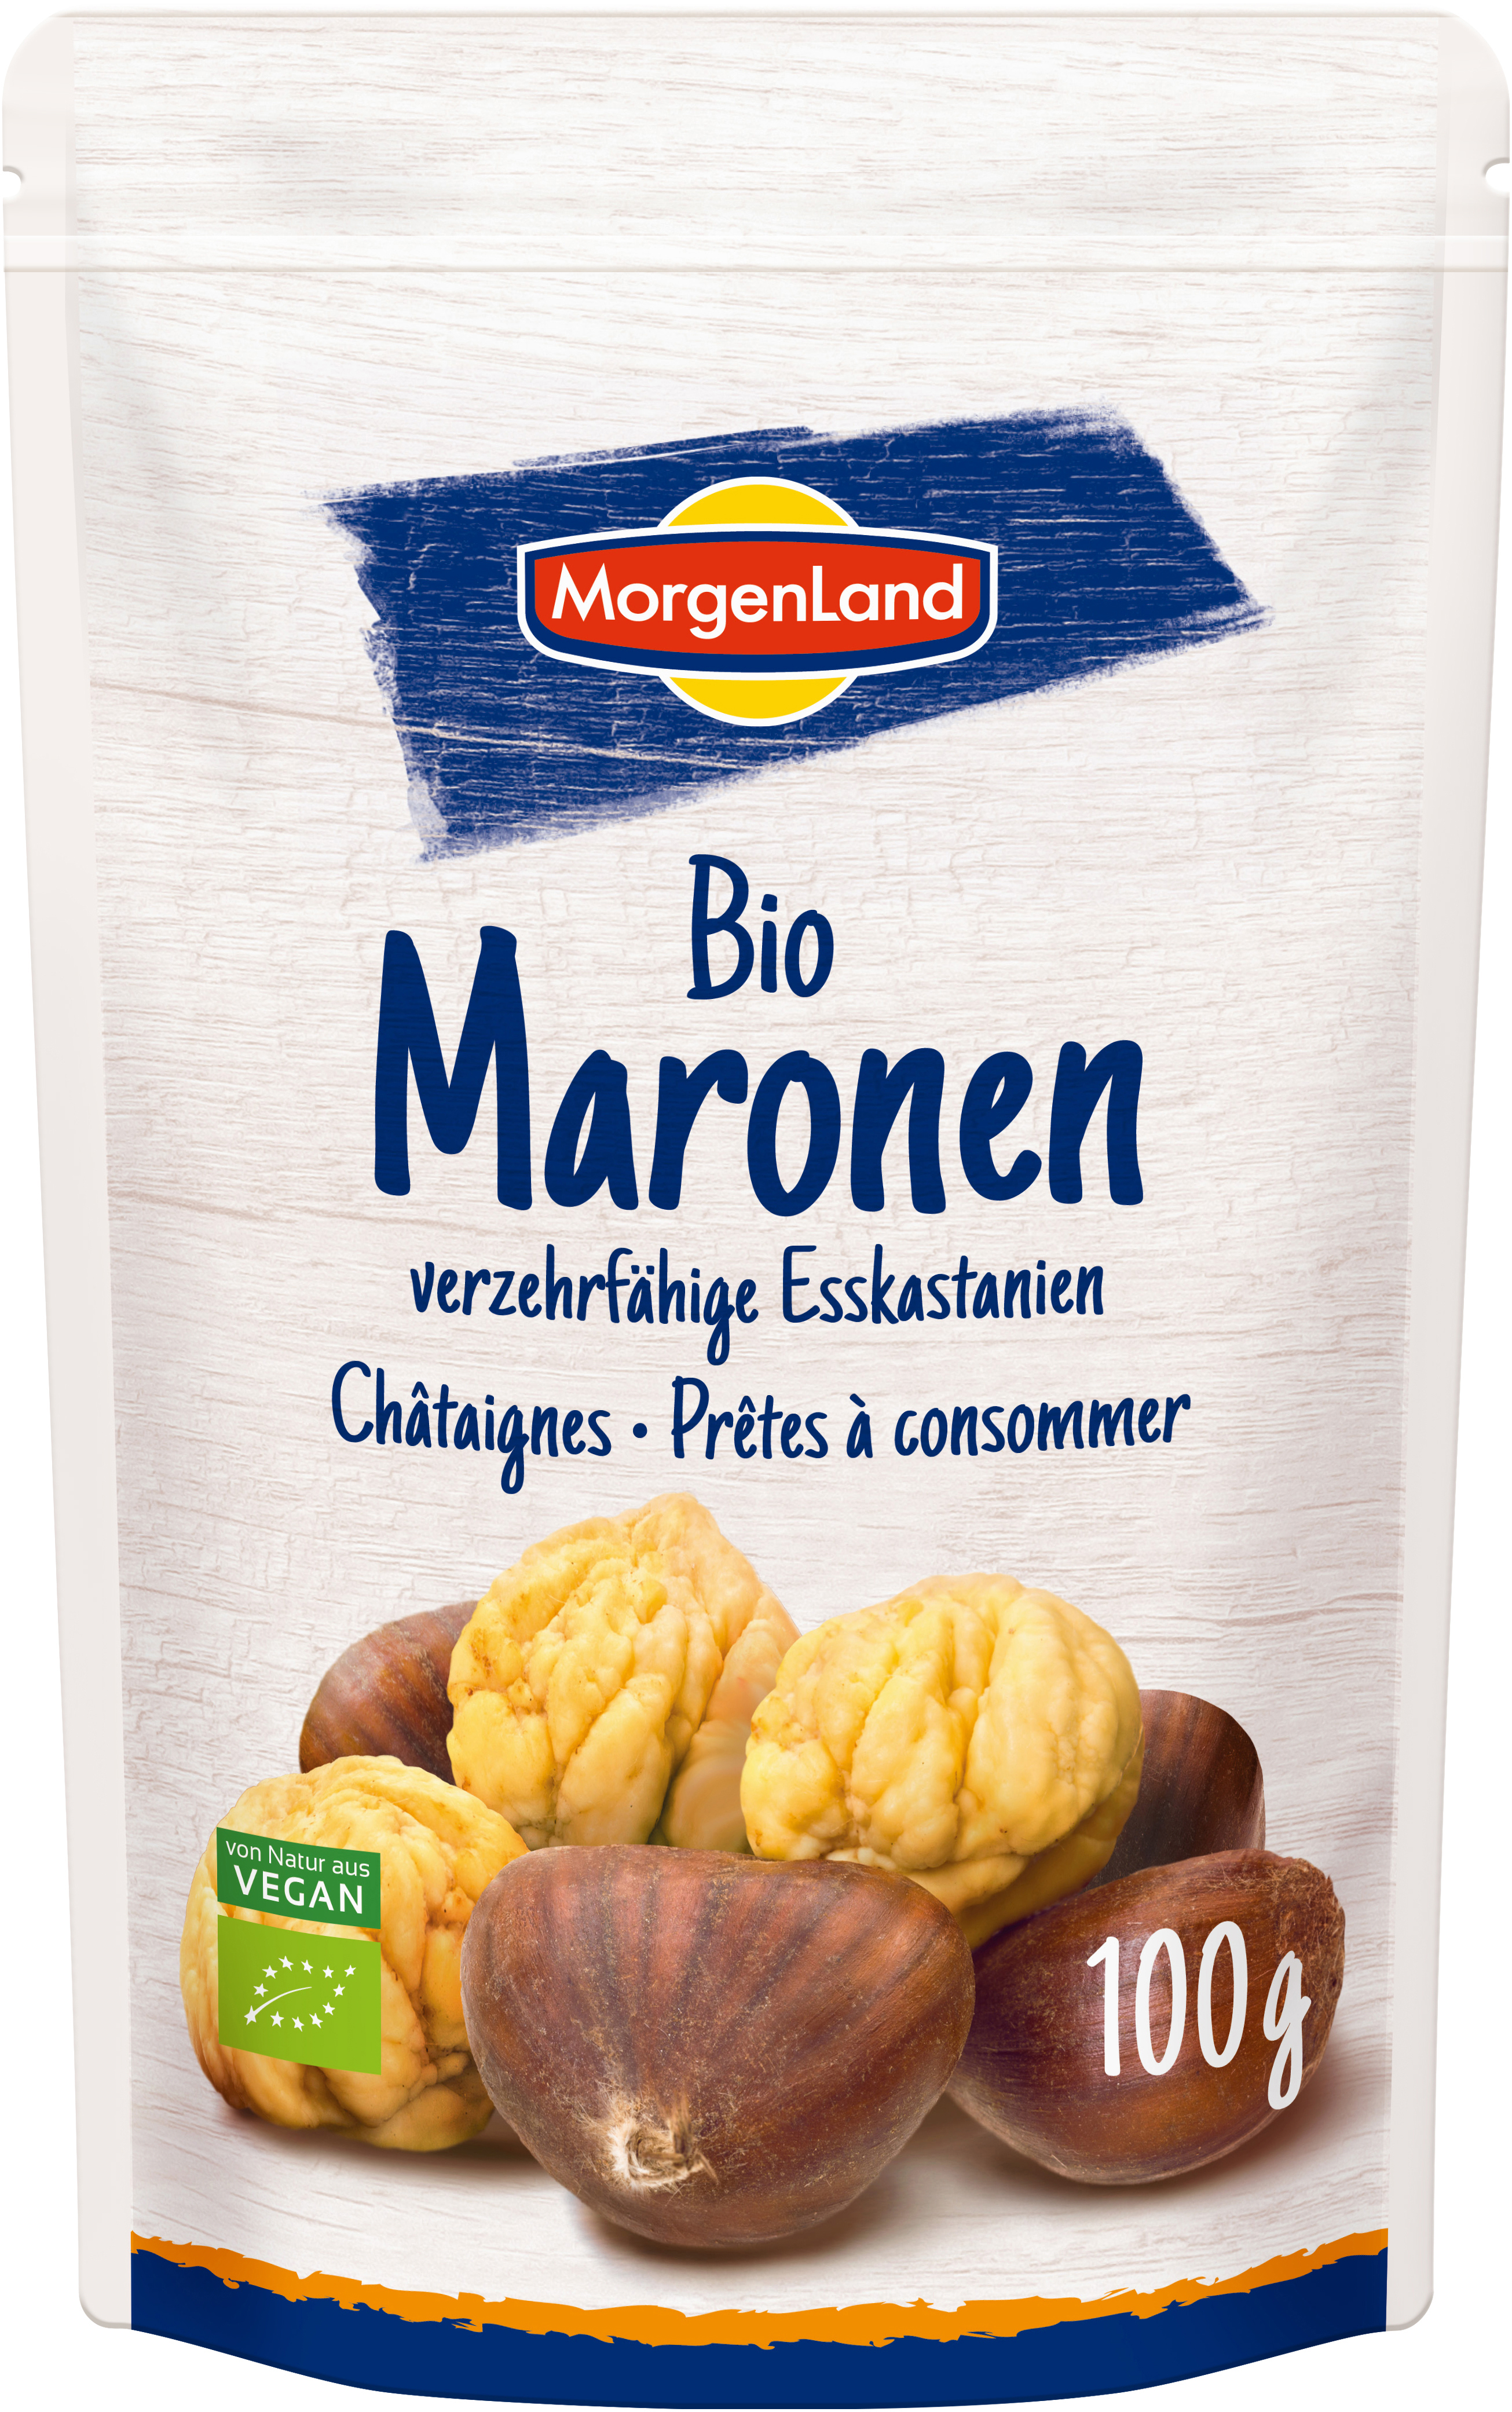 MorgenLand Maronen 100g